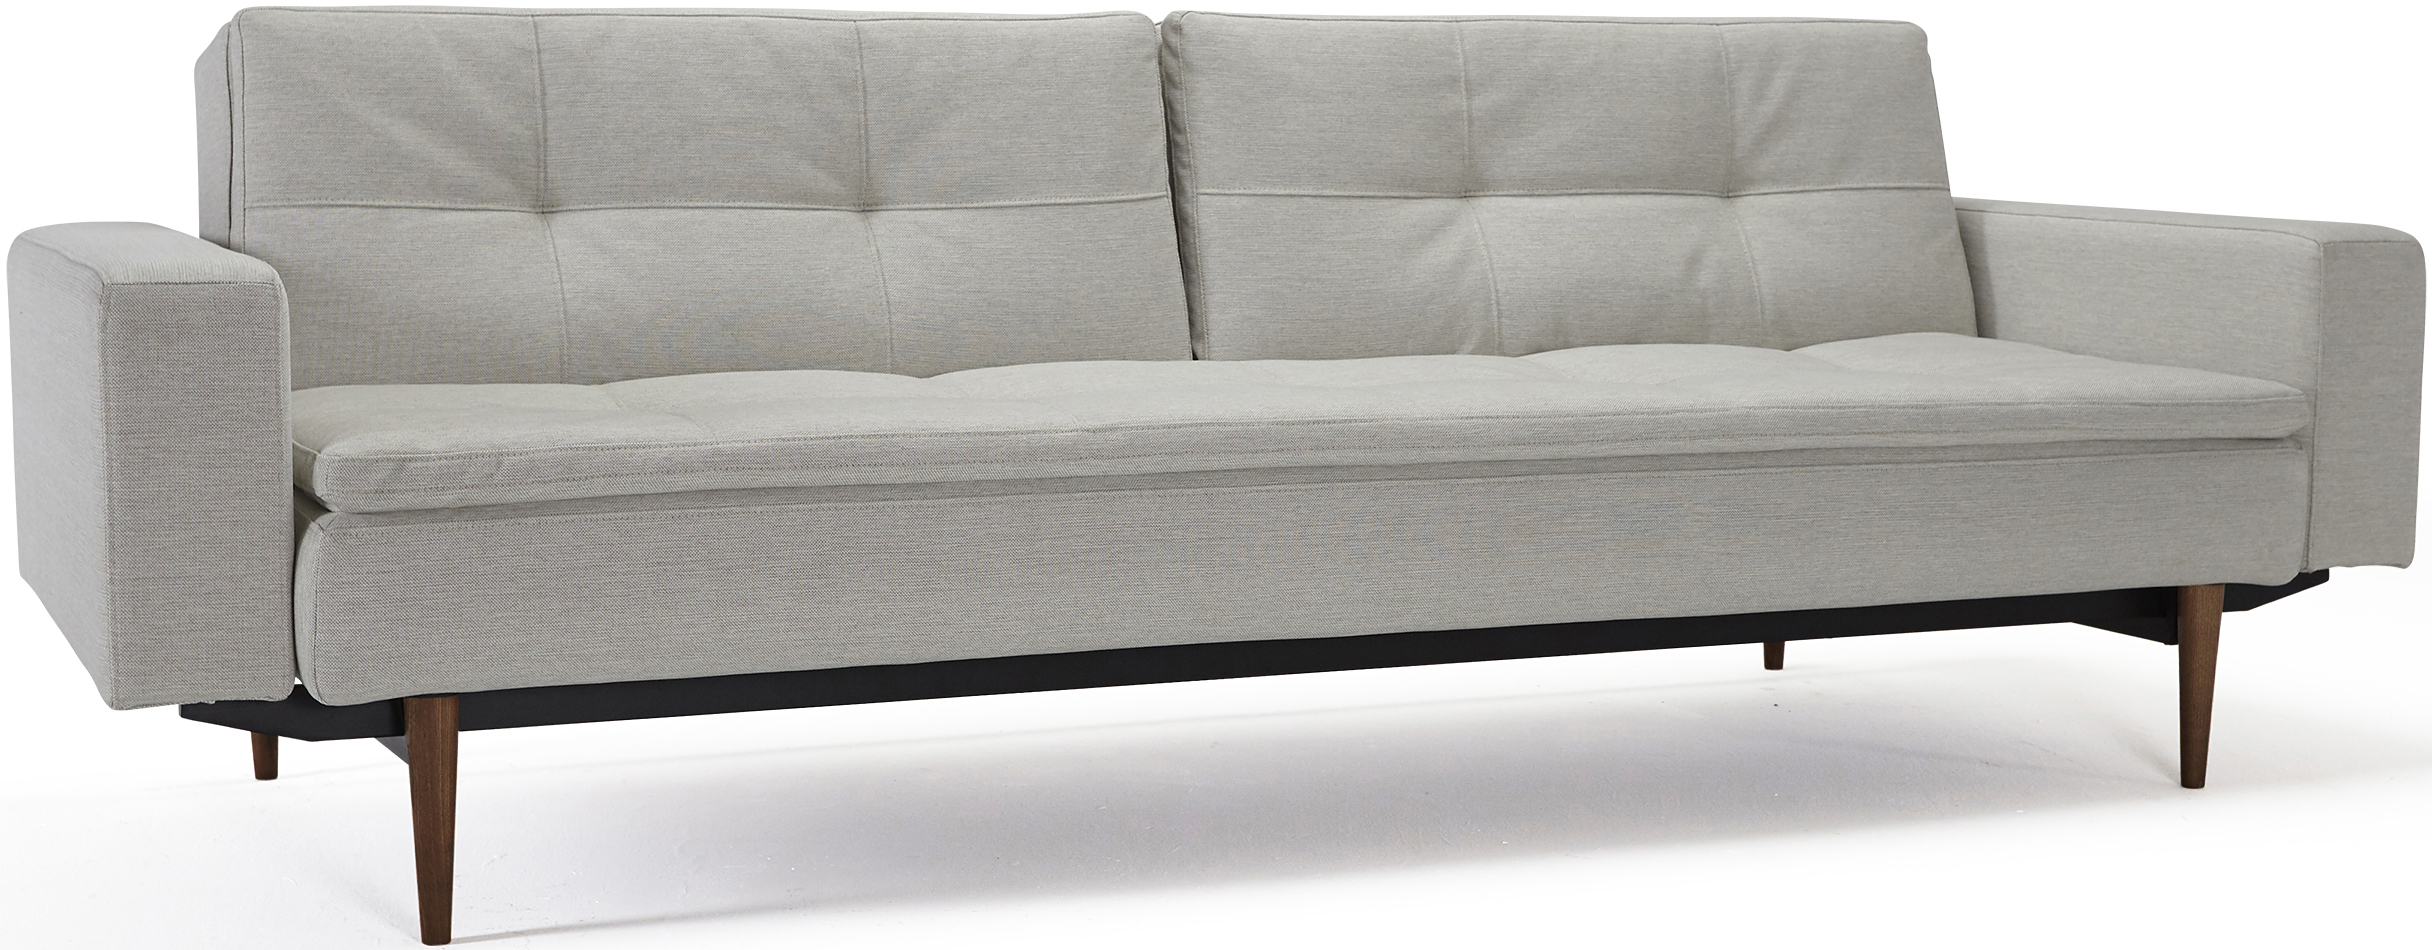 the dublexo sofa with arms